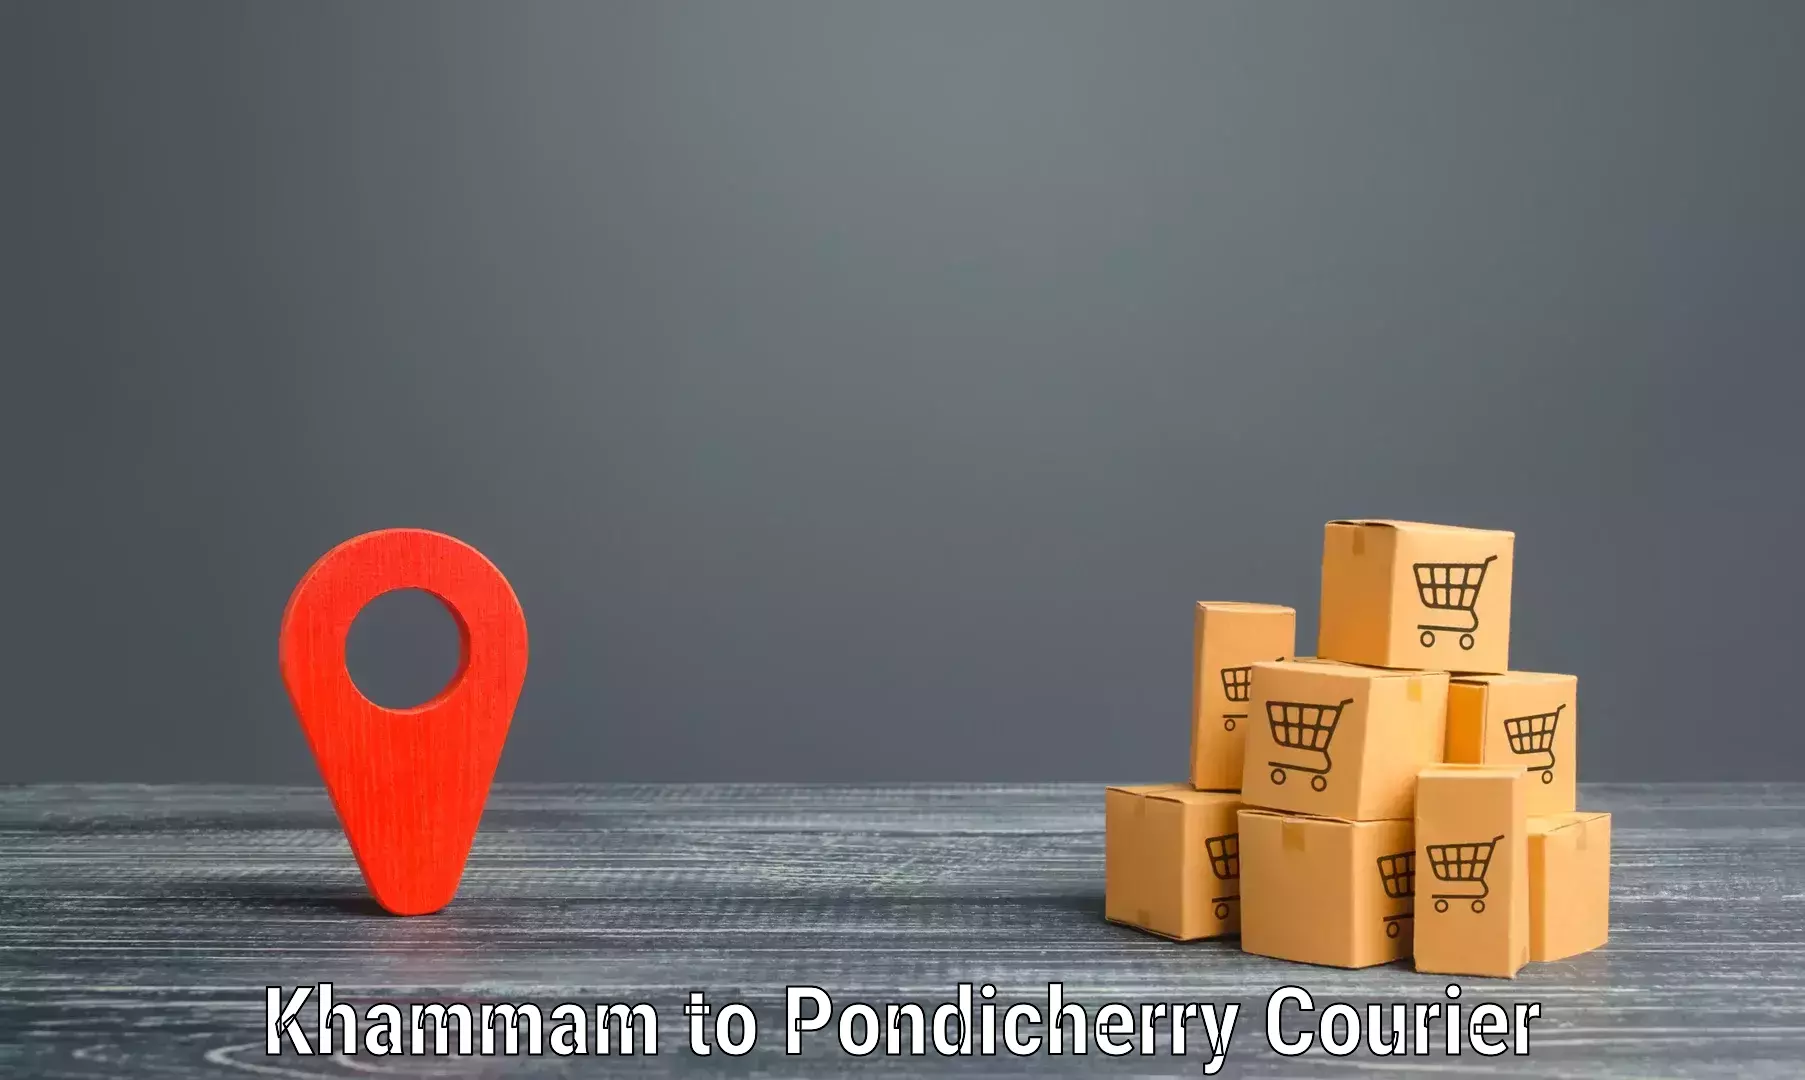 Global shipping networks Khammam to Pondicherry University